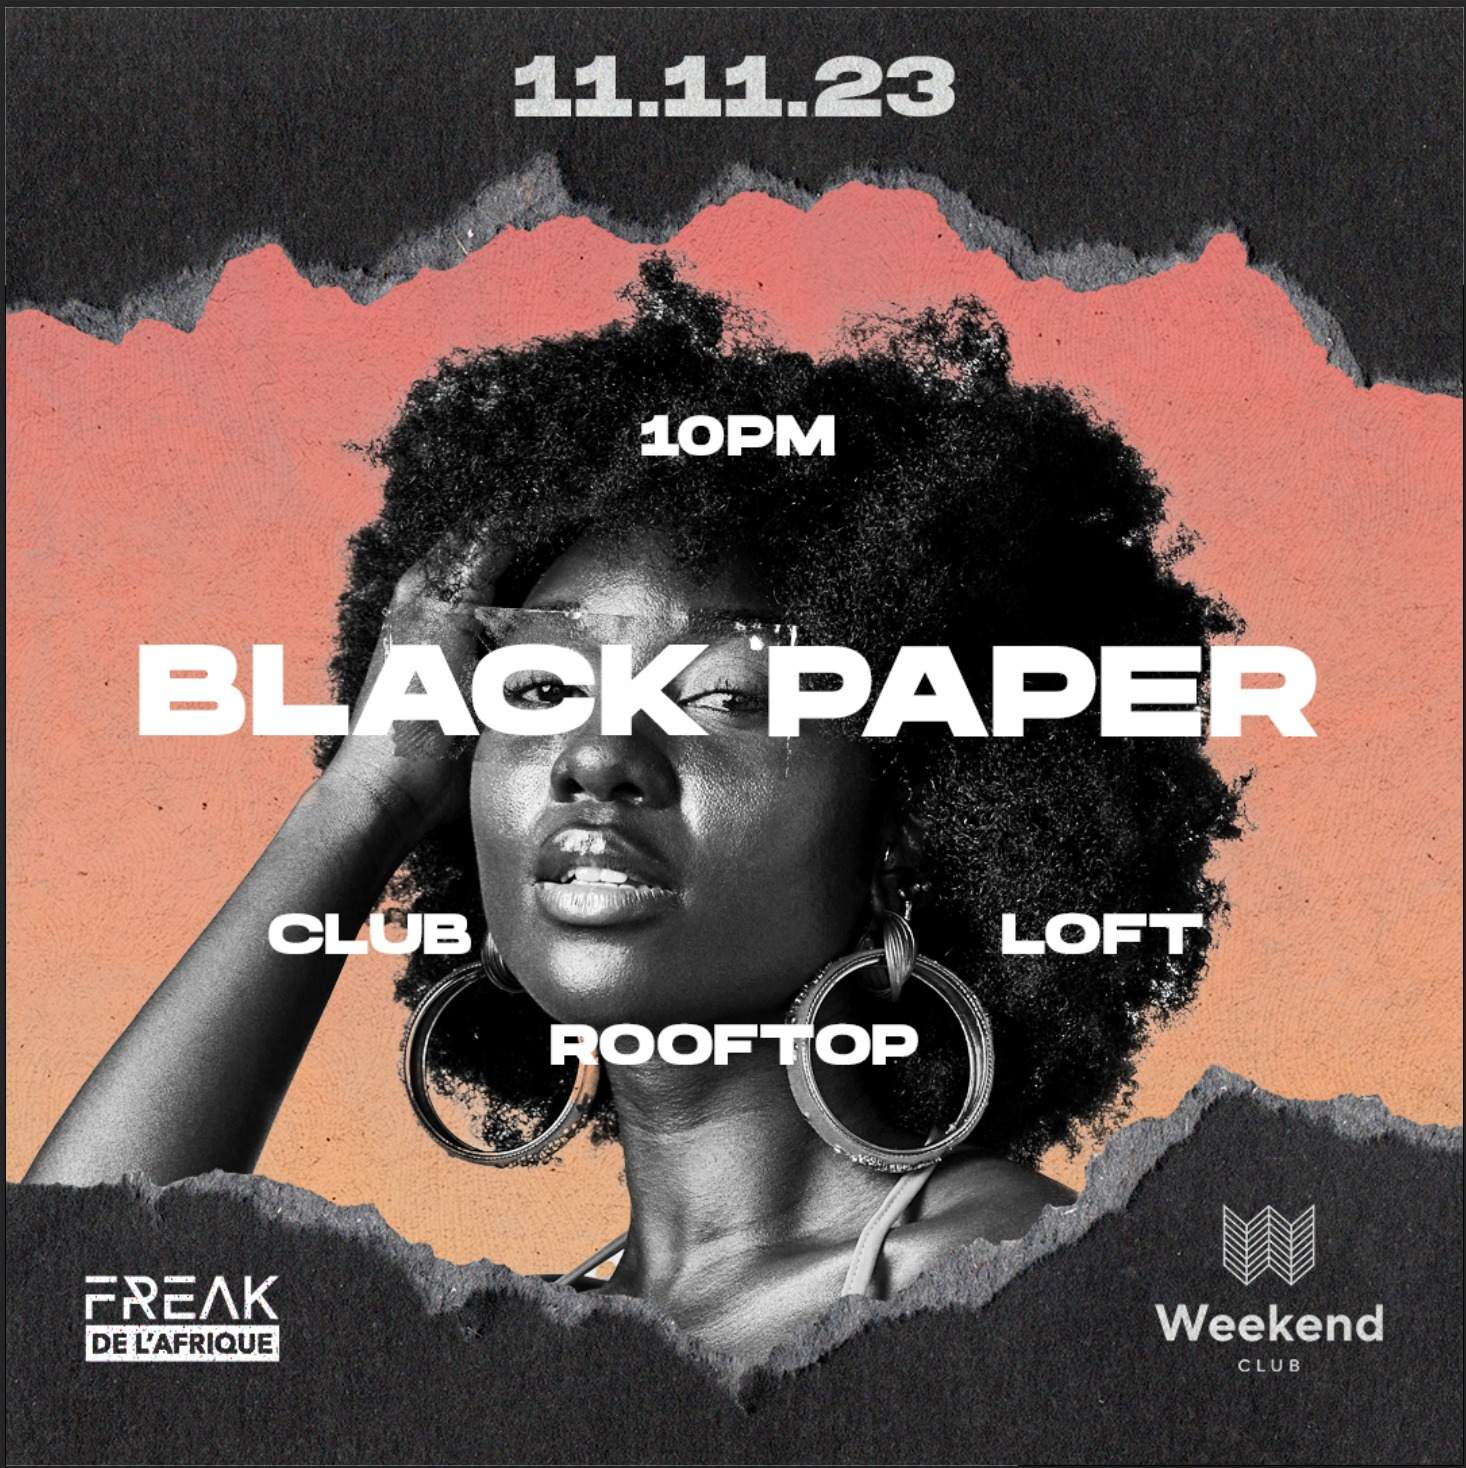 Black paper Party - Página frontal